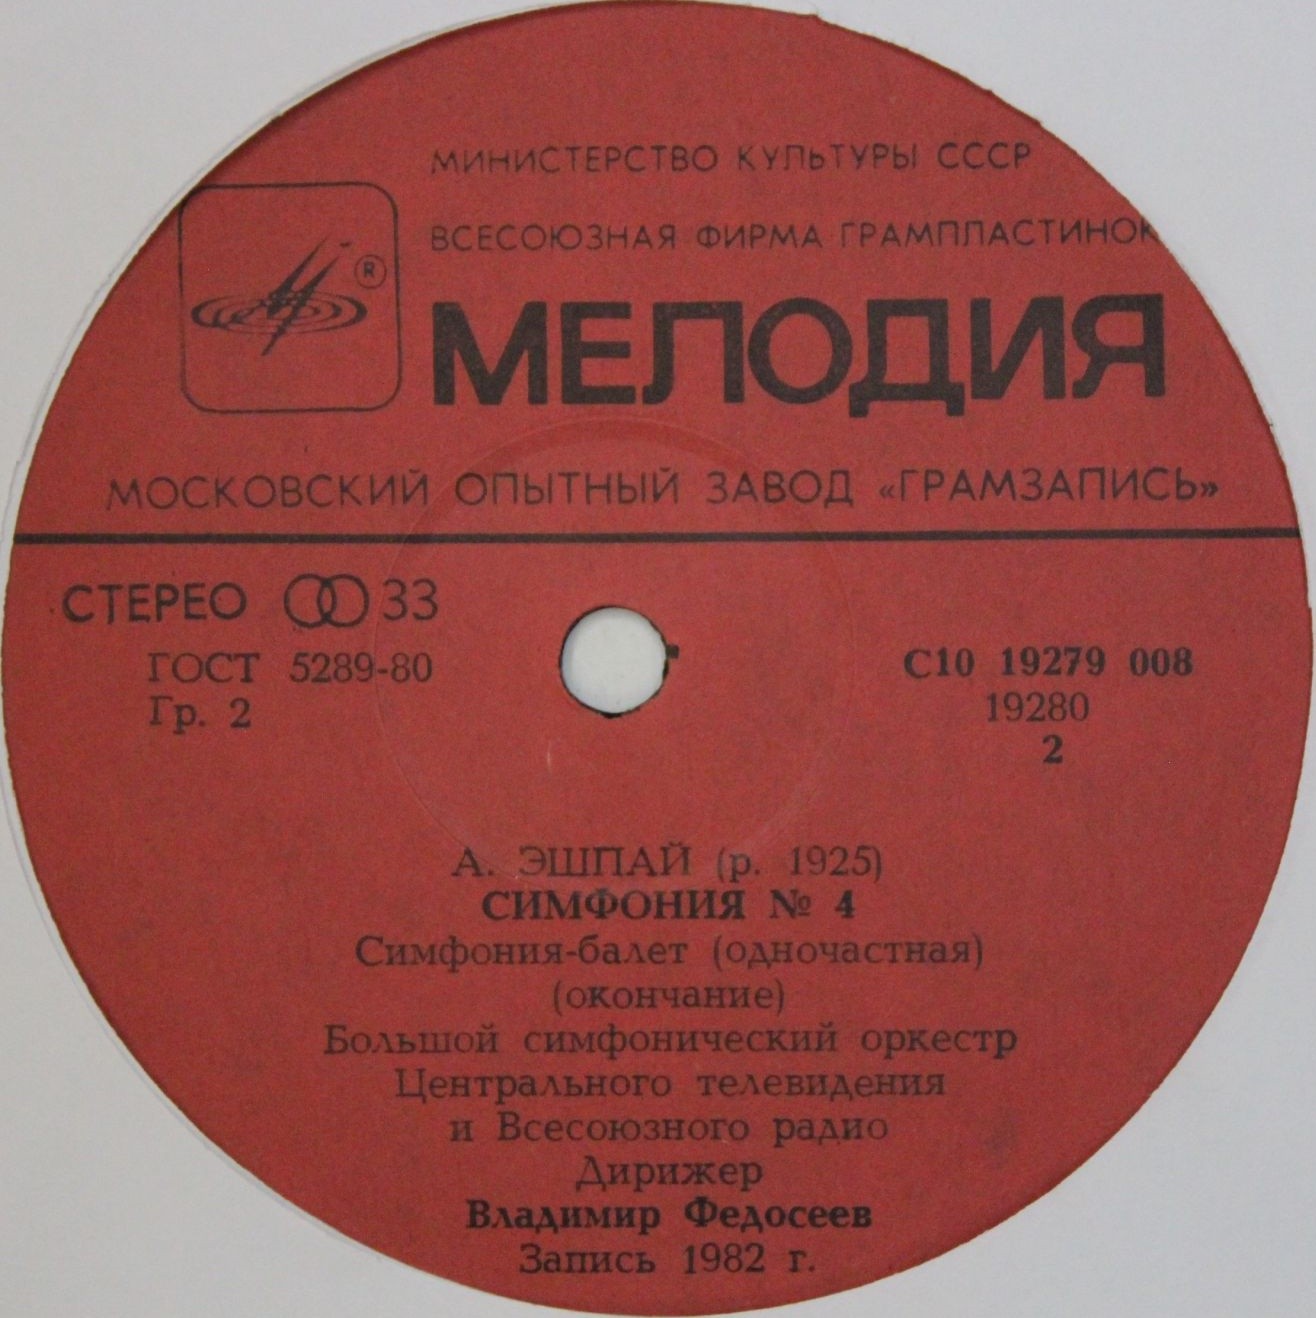 А. ЭШПАЙ (1925): Симфония № 4 (Симфония-балет).